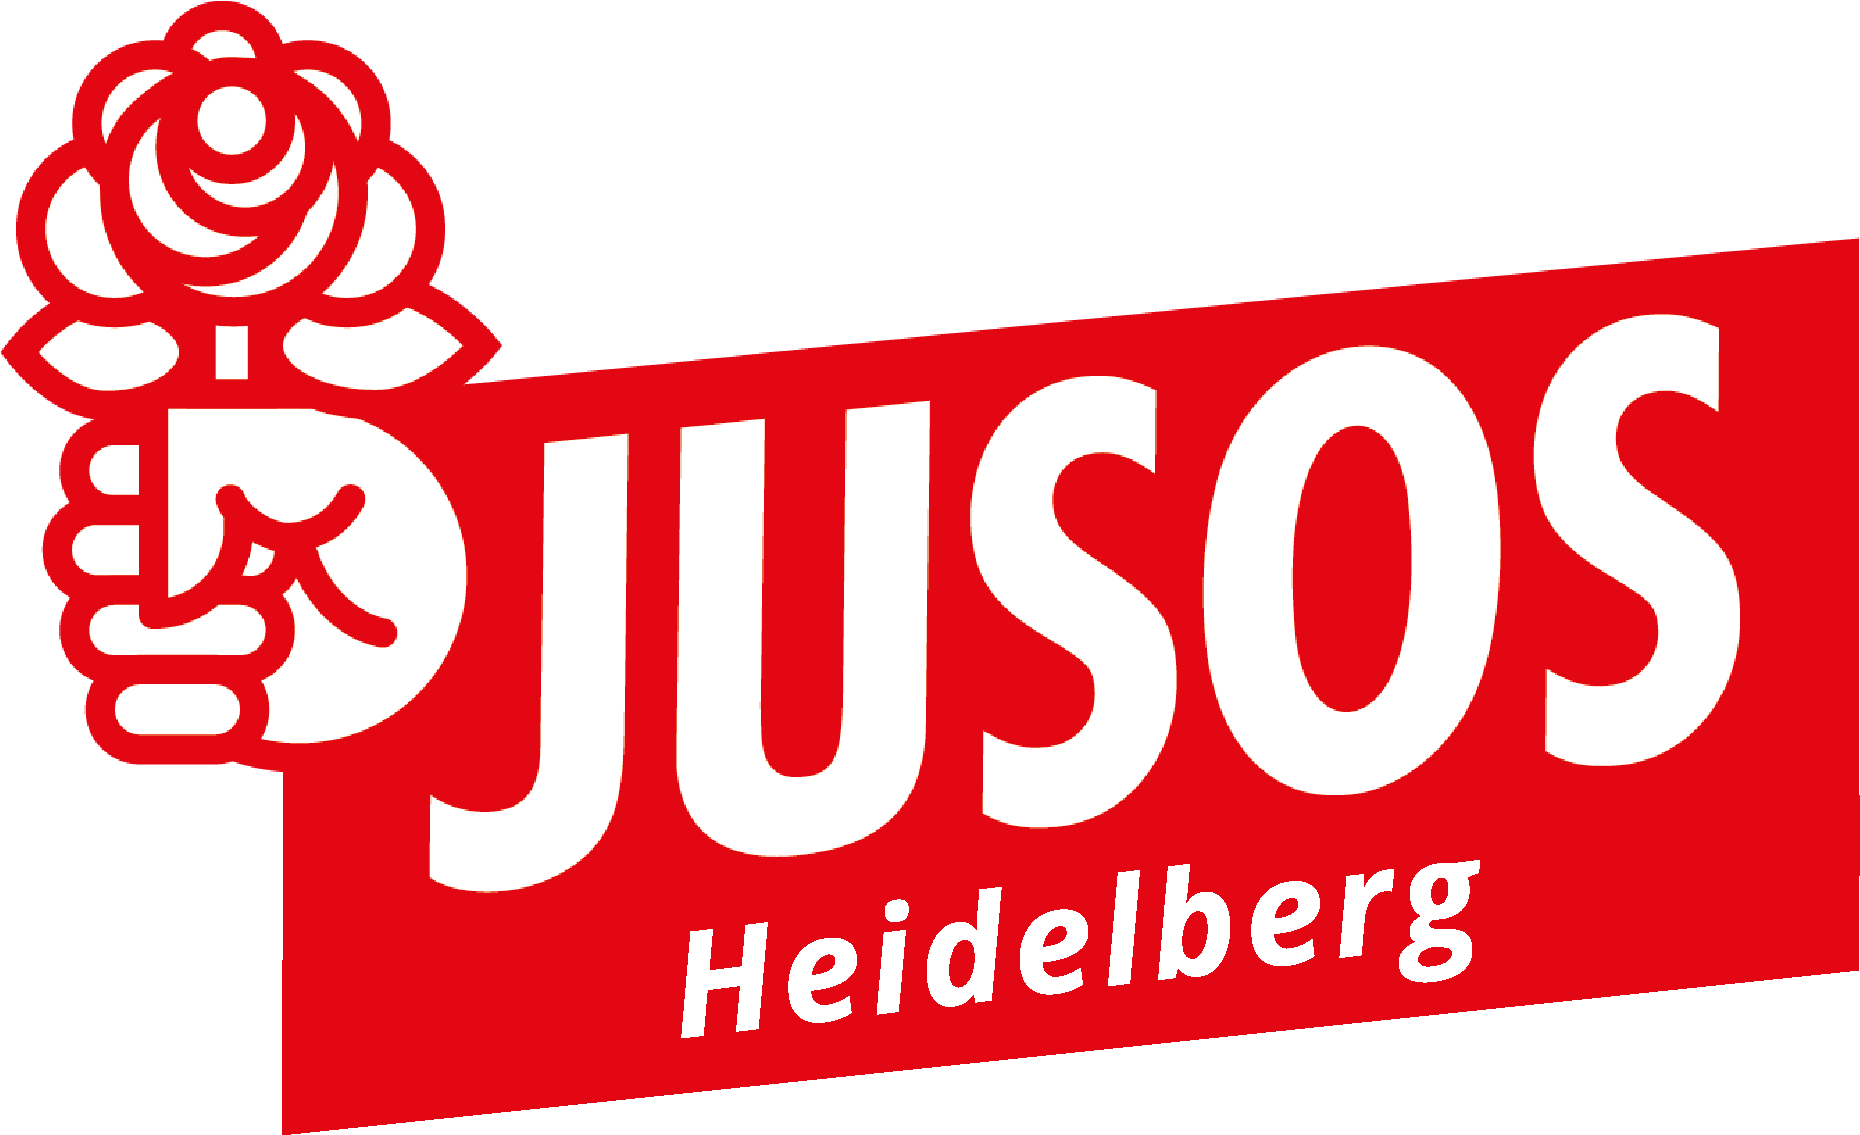 Jusos Logo